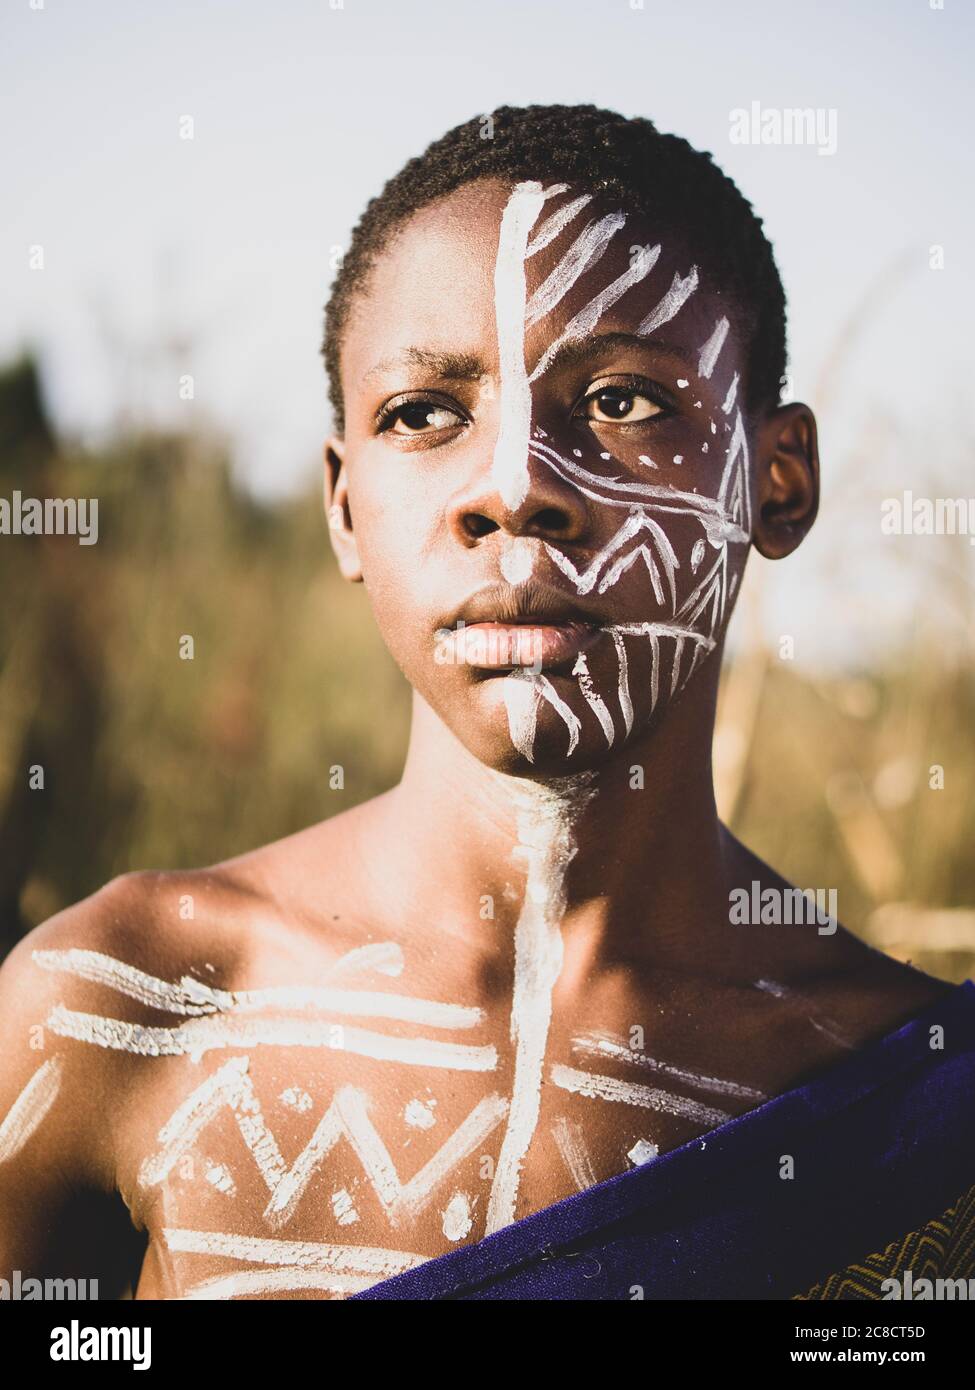 portrait d'un garçon africain avec une peinture ethnique du visage et un habillage dans la brousse Banque D'Images